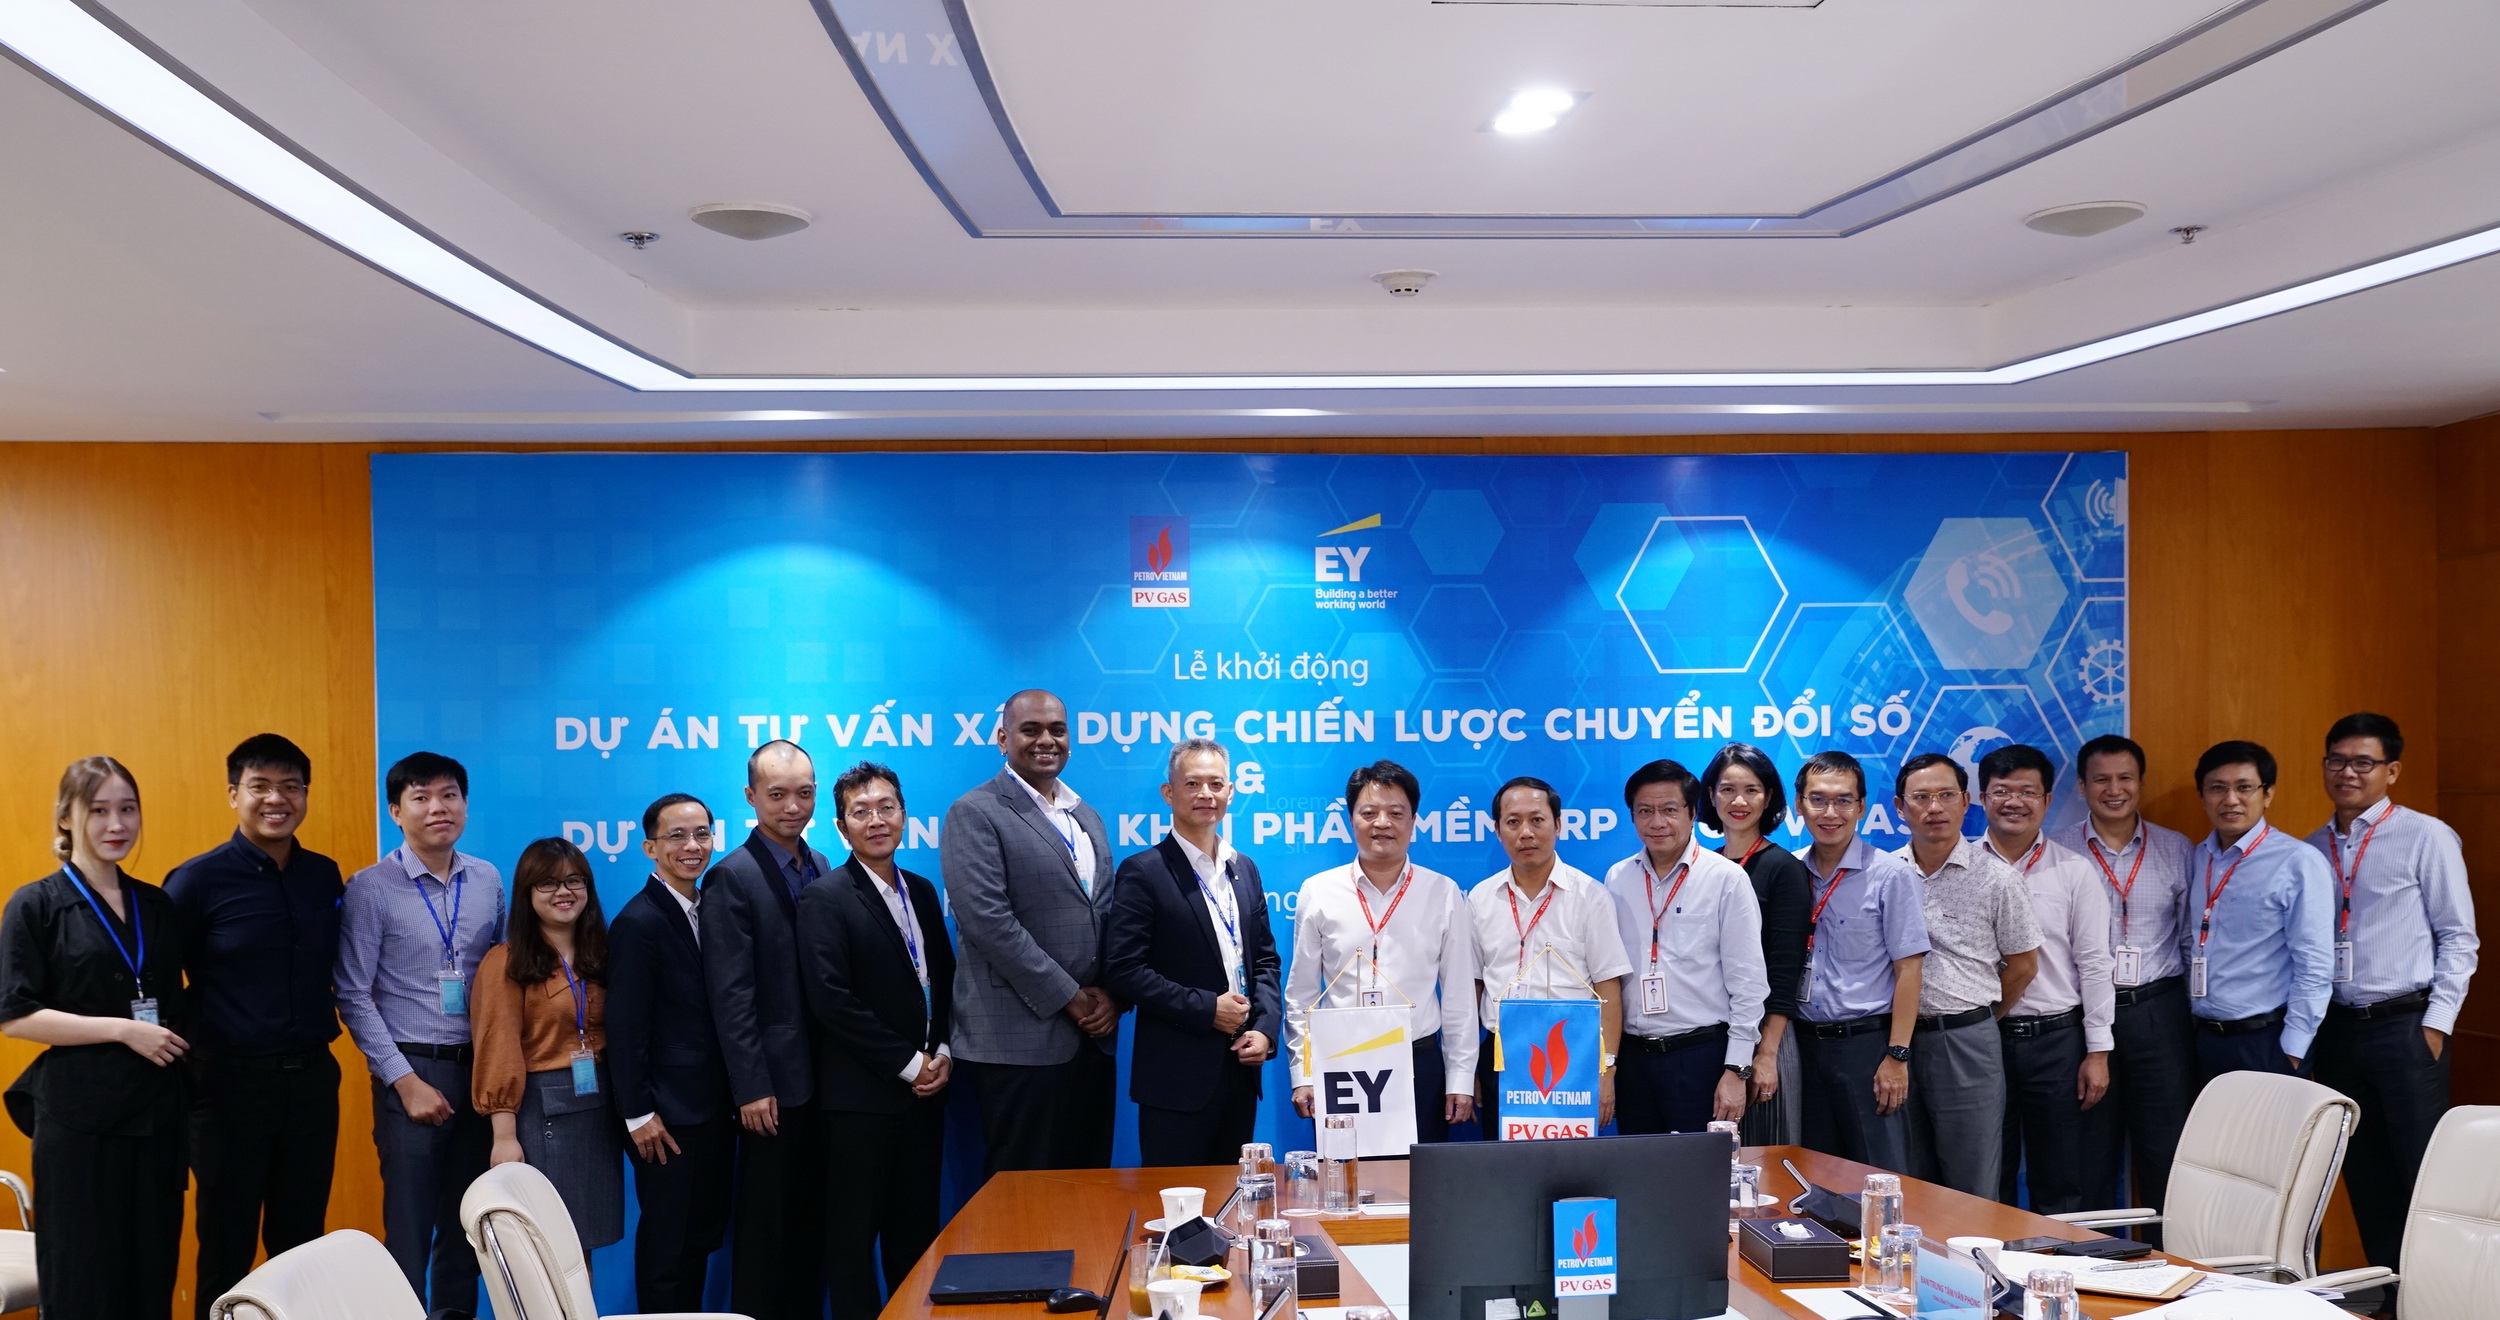 Tổng công ty Khí Việt Nam khởi động dự án “Tư vấn chiến lược chuyển đổi số” và “Tư vấn triển khai phần mềm ERP